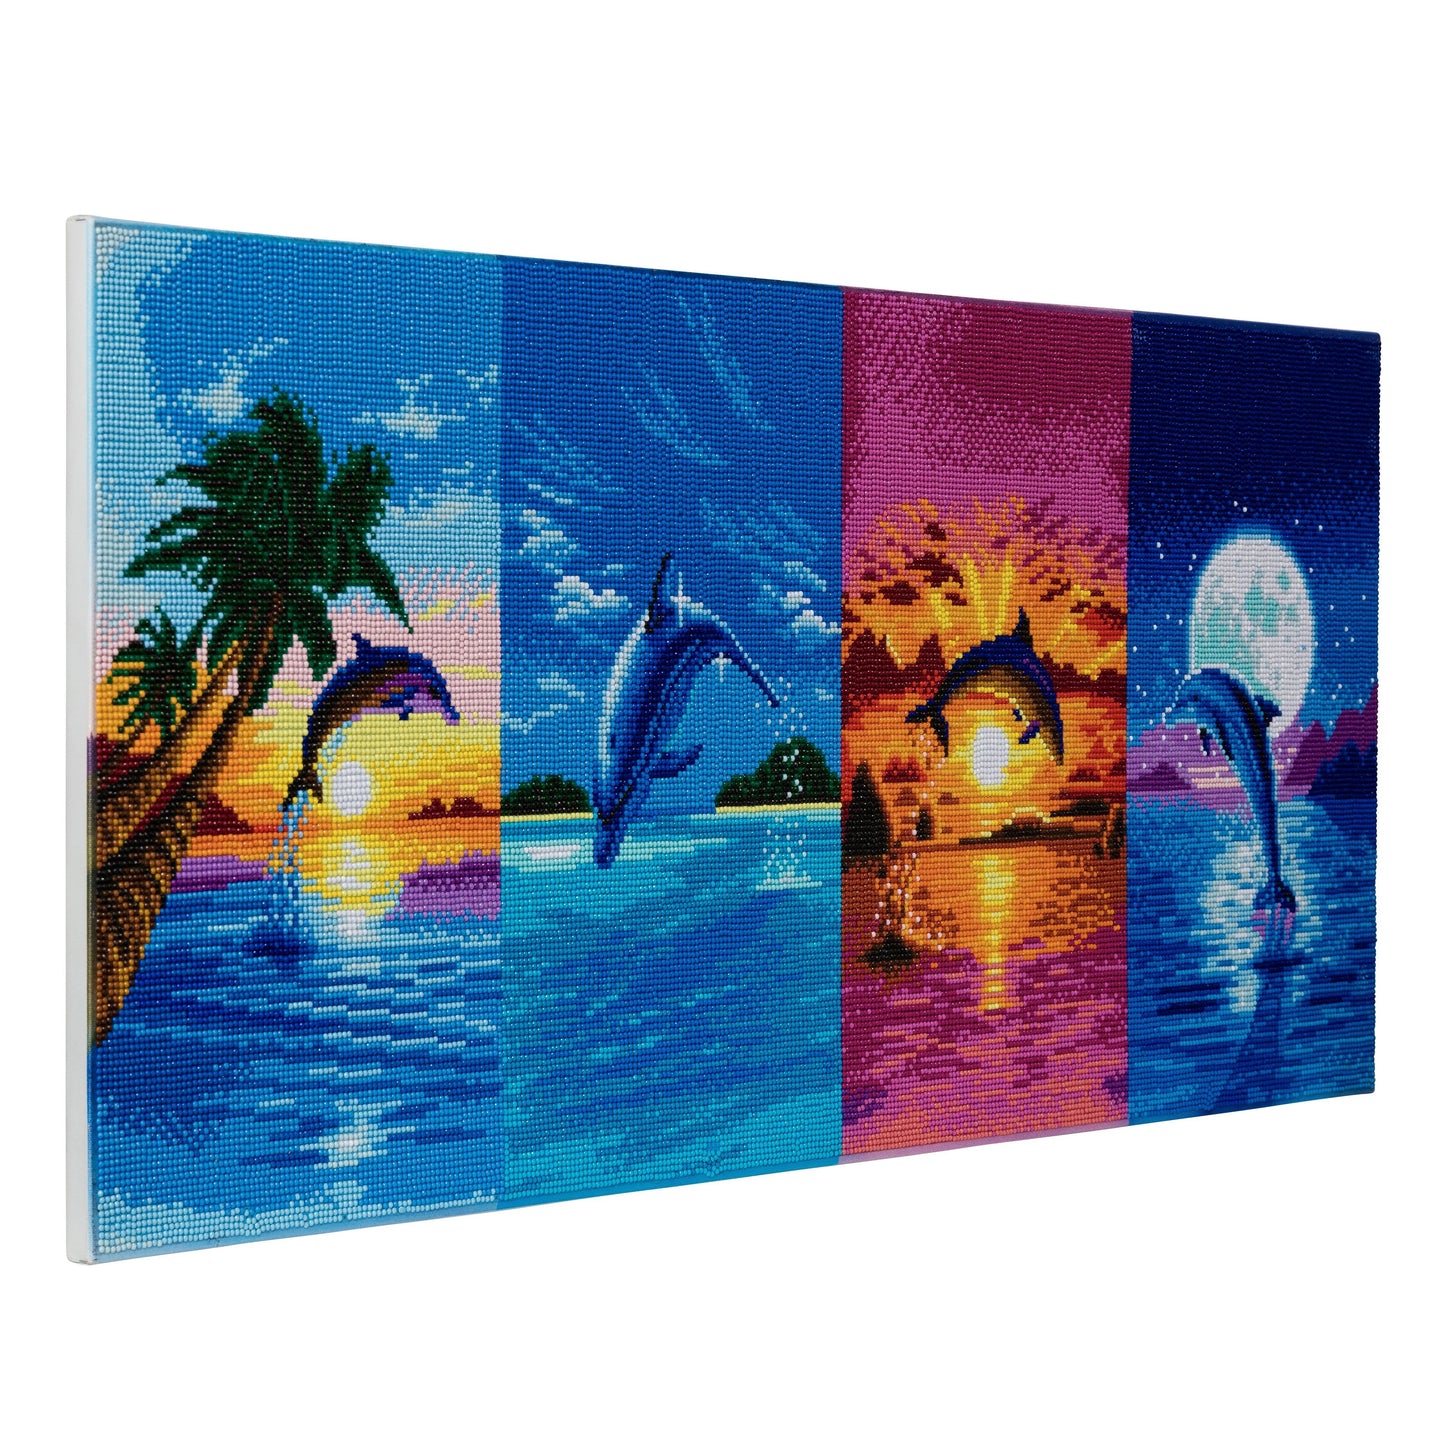 CAK-A64: "Day of the Dolphin" Framed Crystal Art Kit, 40 x 90cm